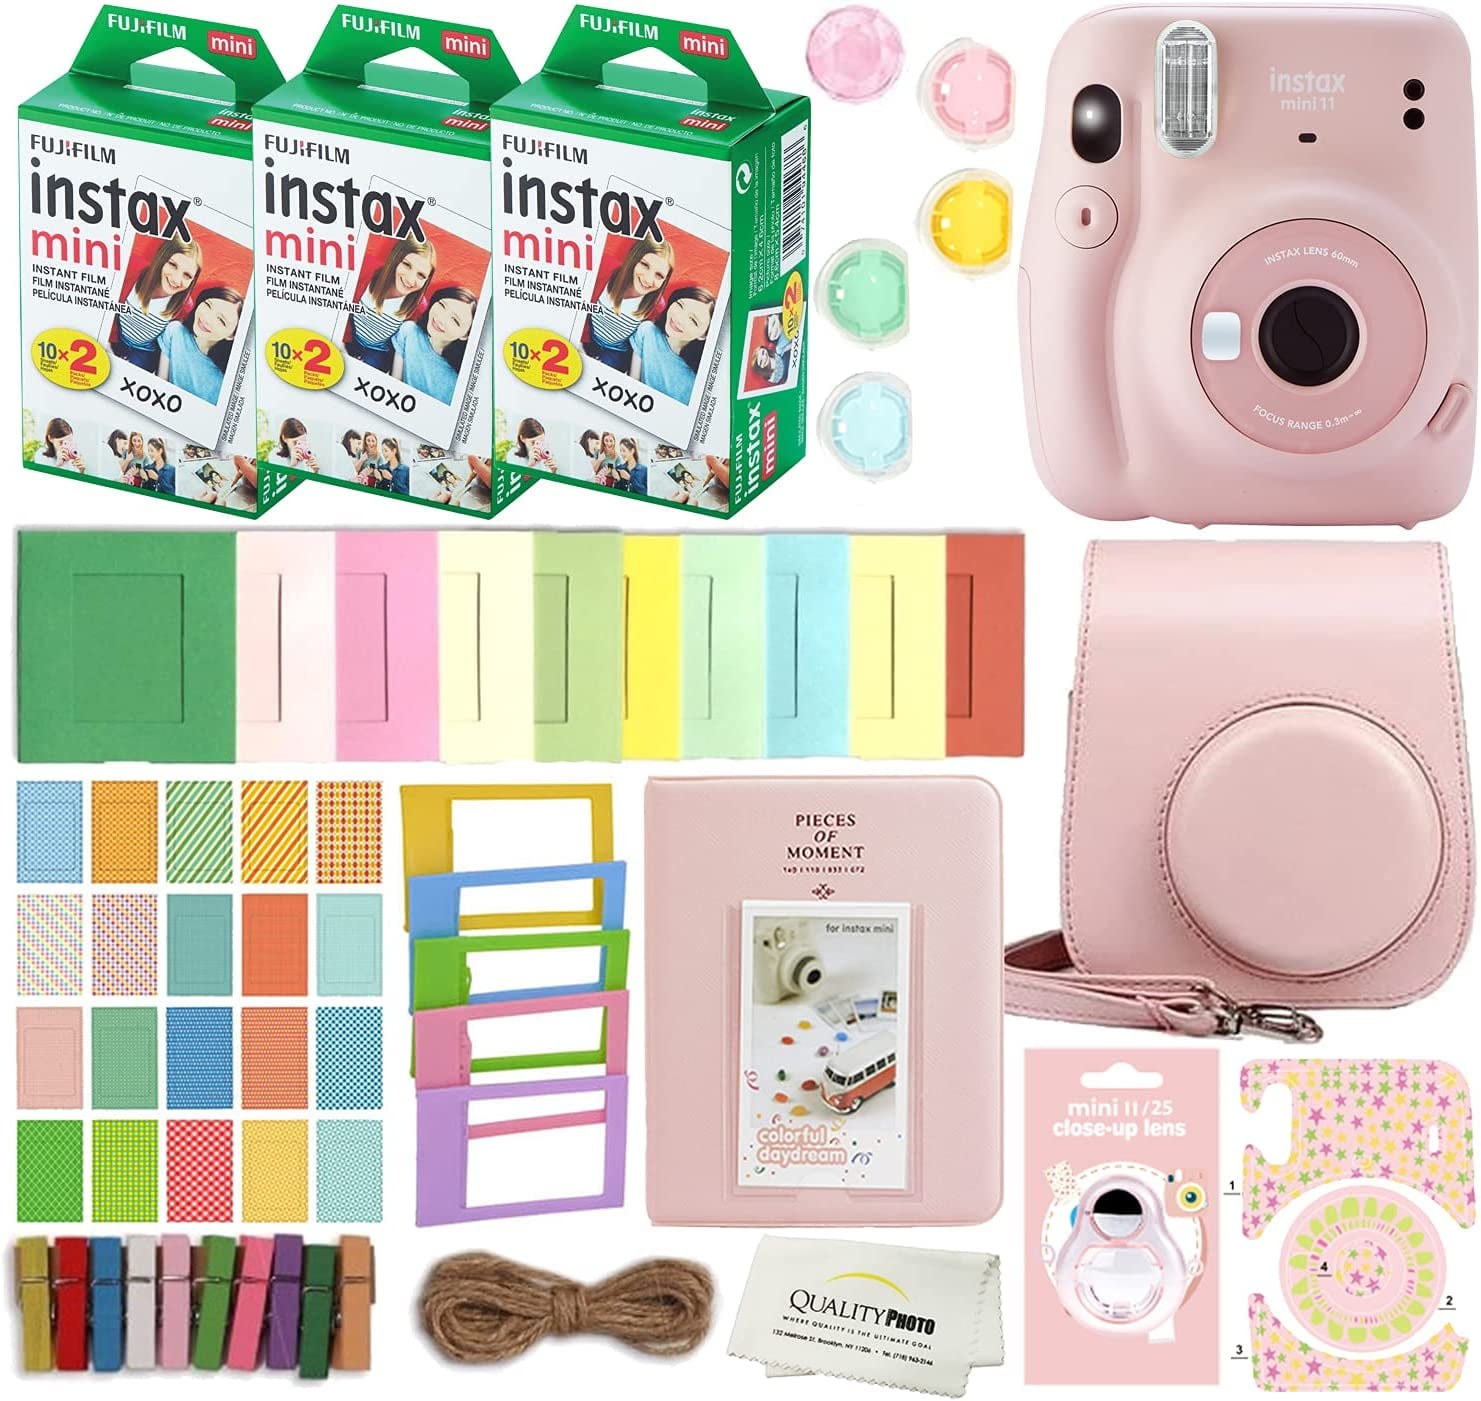 Fujifilm Instax Mini 11 Instant Camera Blush Pink + Custom Case + Fuji  Instax Film Value Pack (50 Sheets) Flamingo Designer Photo Album for Photos